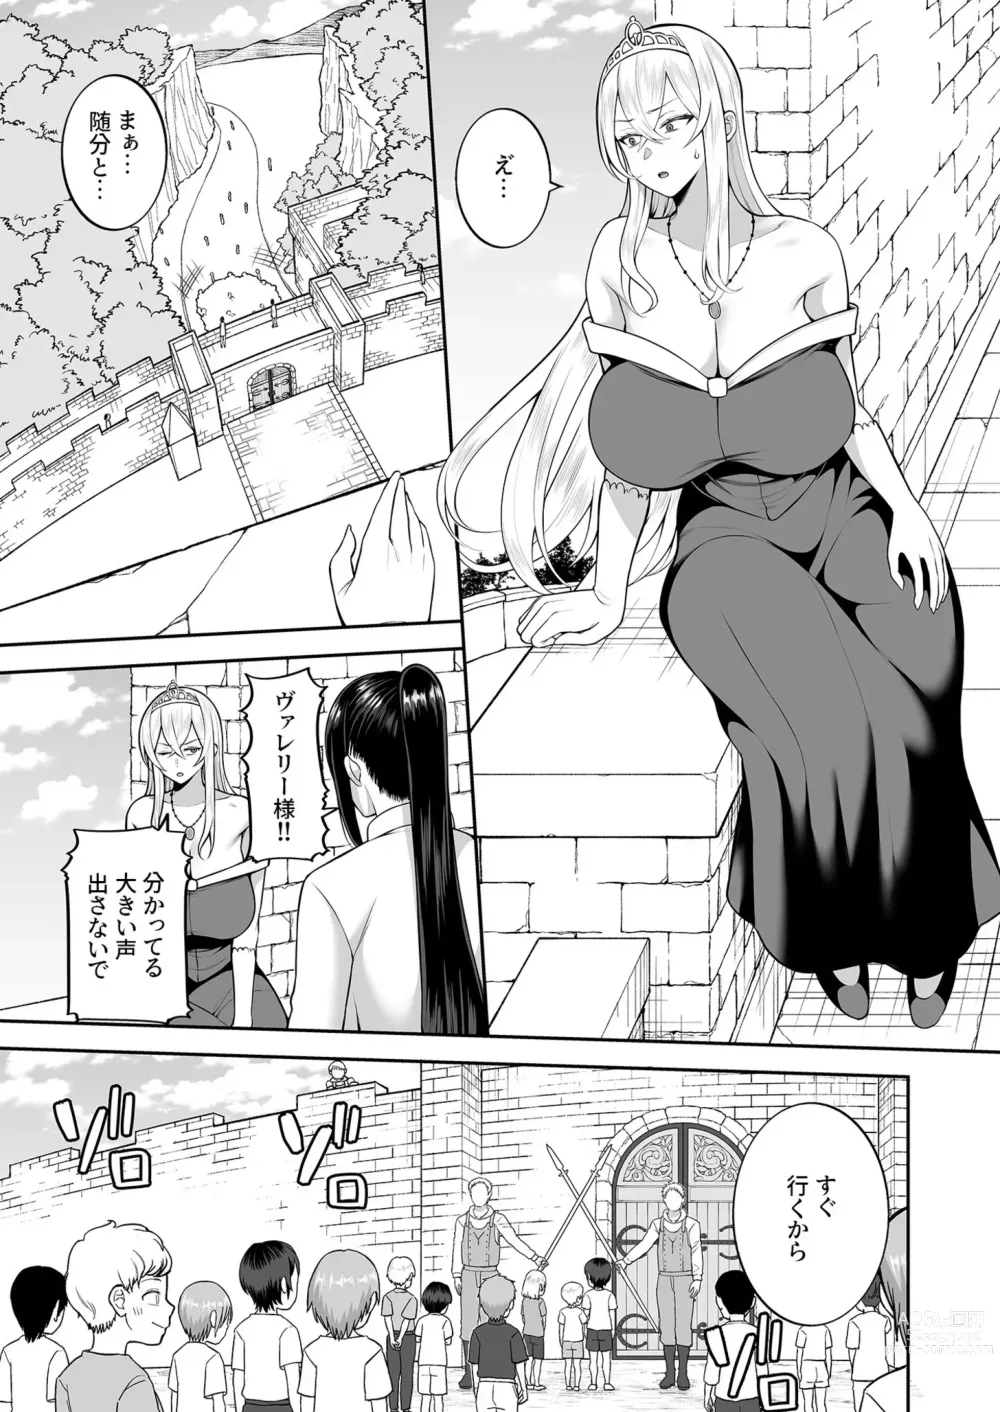 Page 3 of manga Valerie Monogatari 3 〜Suki nishi te ii no yo〜